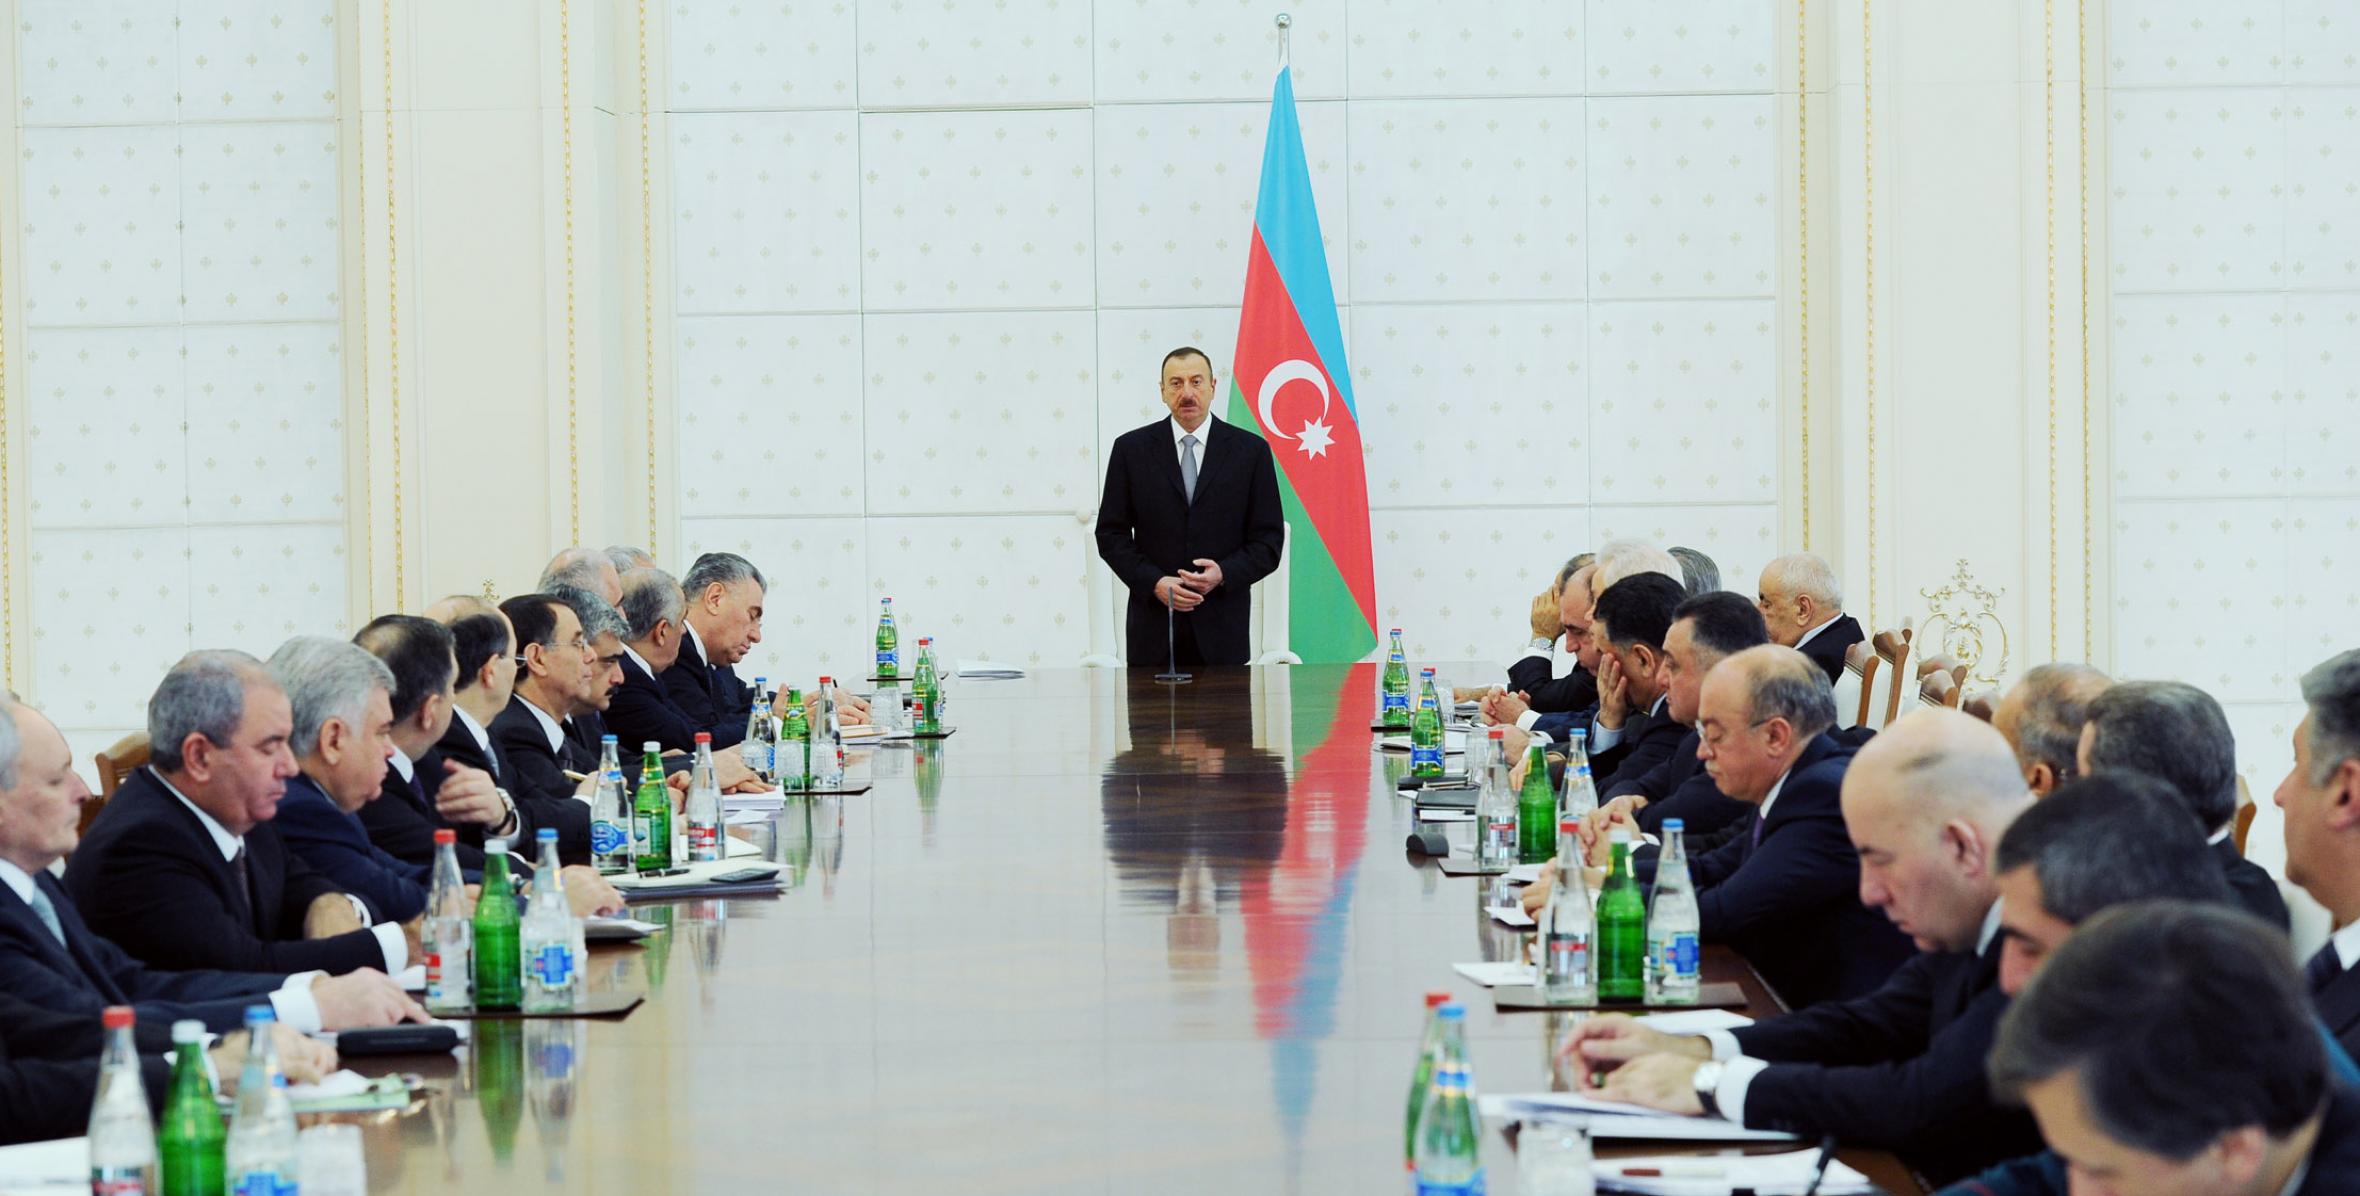 Заключительная речь Ильхама Алиева на заседании Кабинета Министров, посвященном итогам социально-экономического развития в 2012 году и задачам, предстоящим в 2013 году